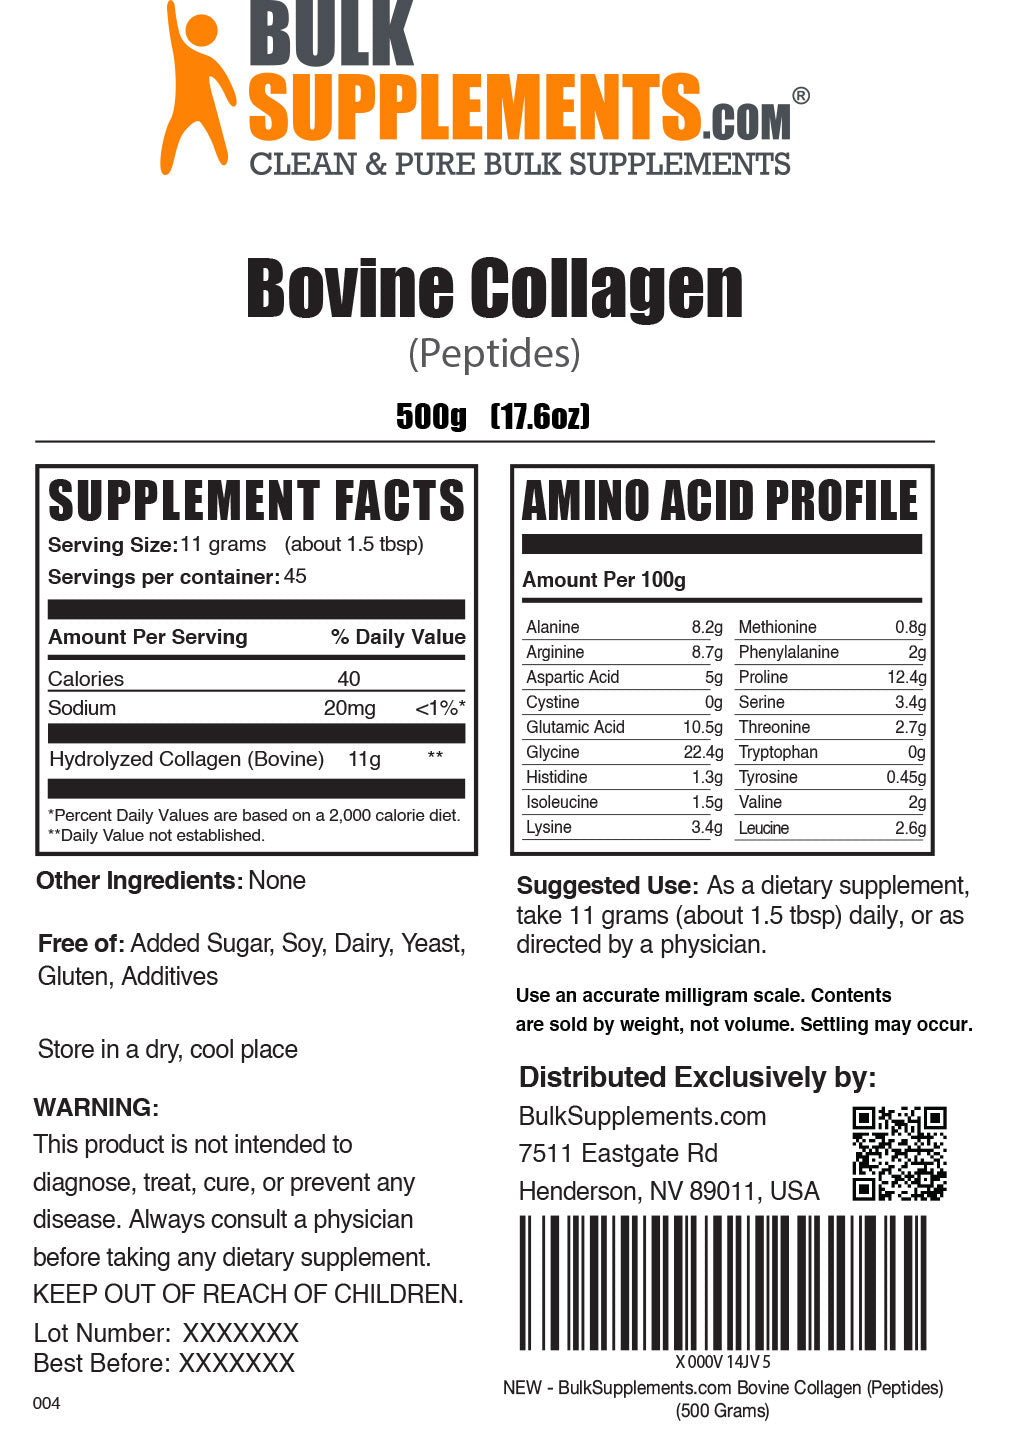 Bovine Collagen Supplement Facts